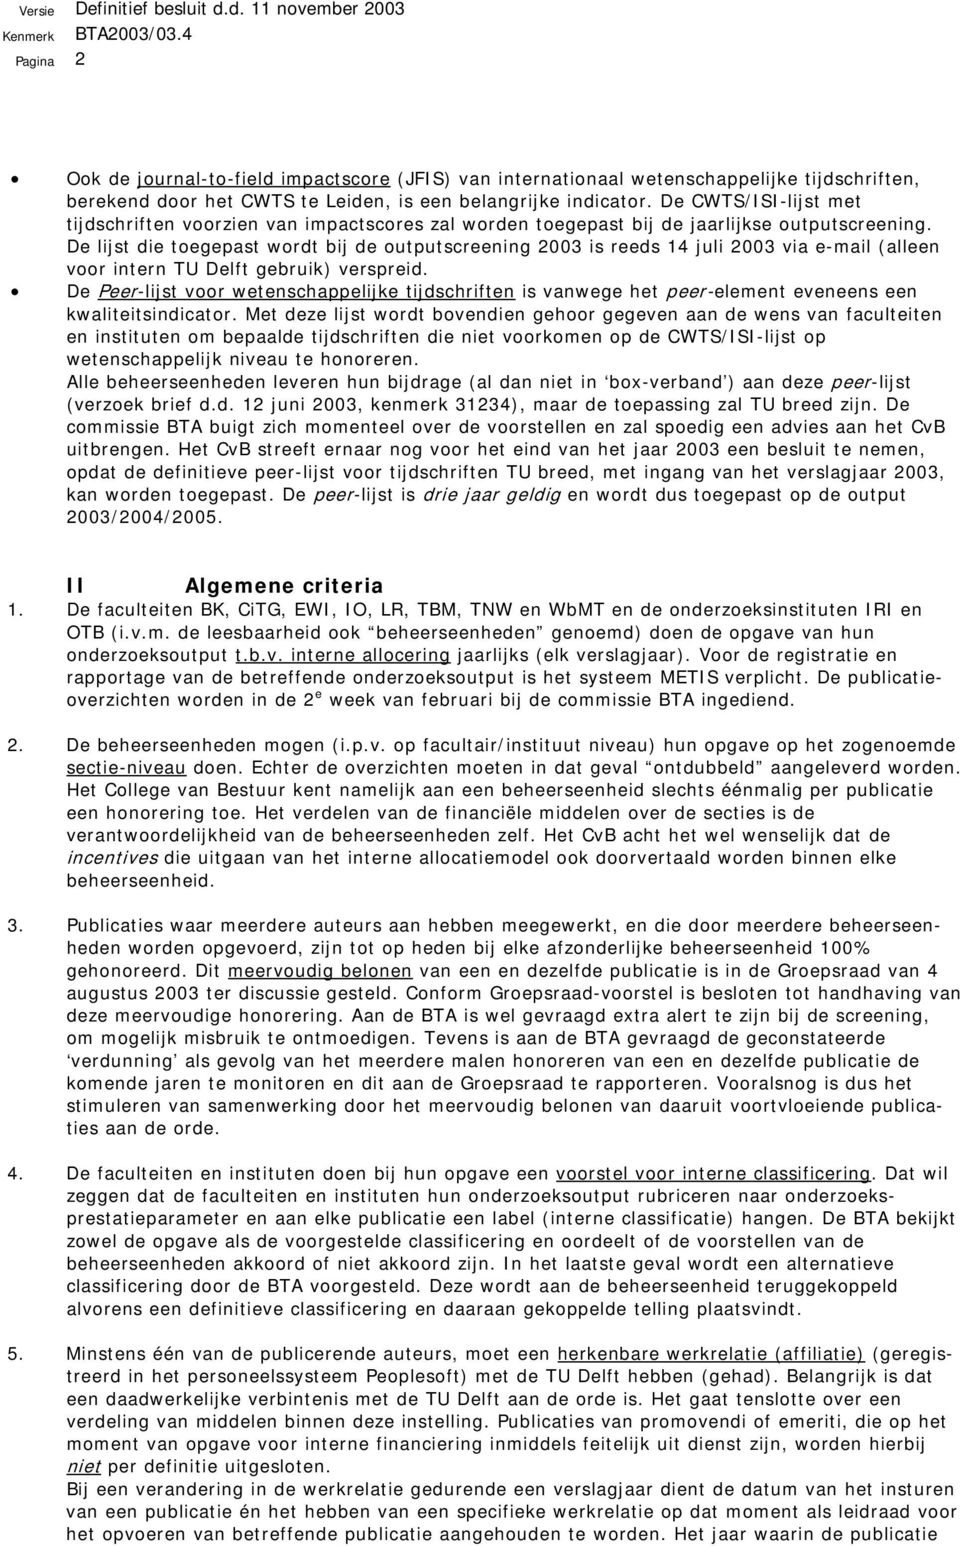 De lijst die toegepast wordt bij de outputscreening 2003 is reeds 14 juli 2003 via e-mail (alleen voor intern TU Delft gebruik) verspreid.